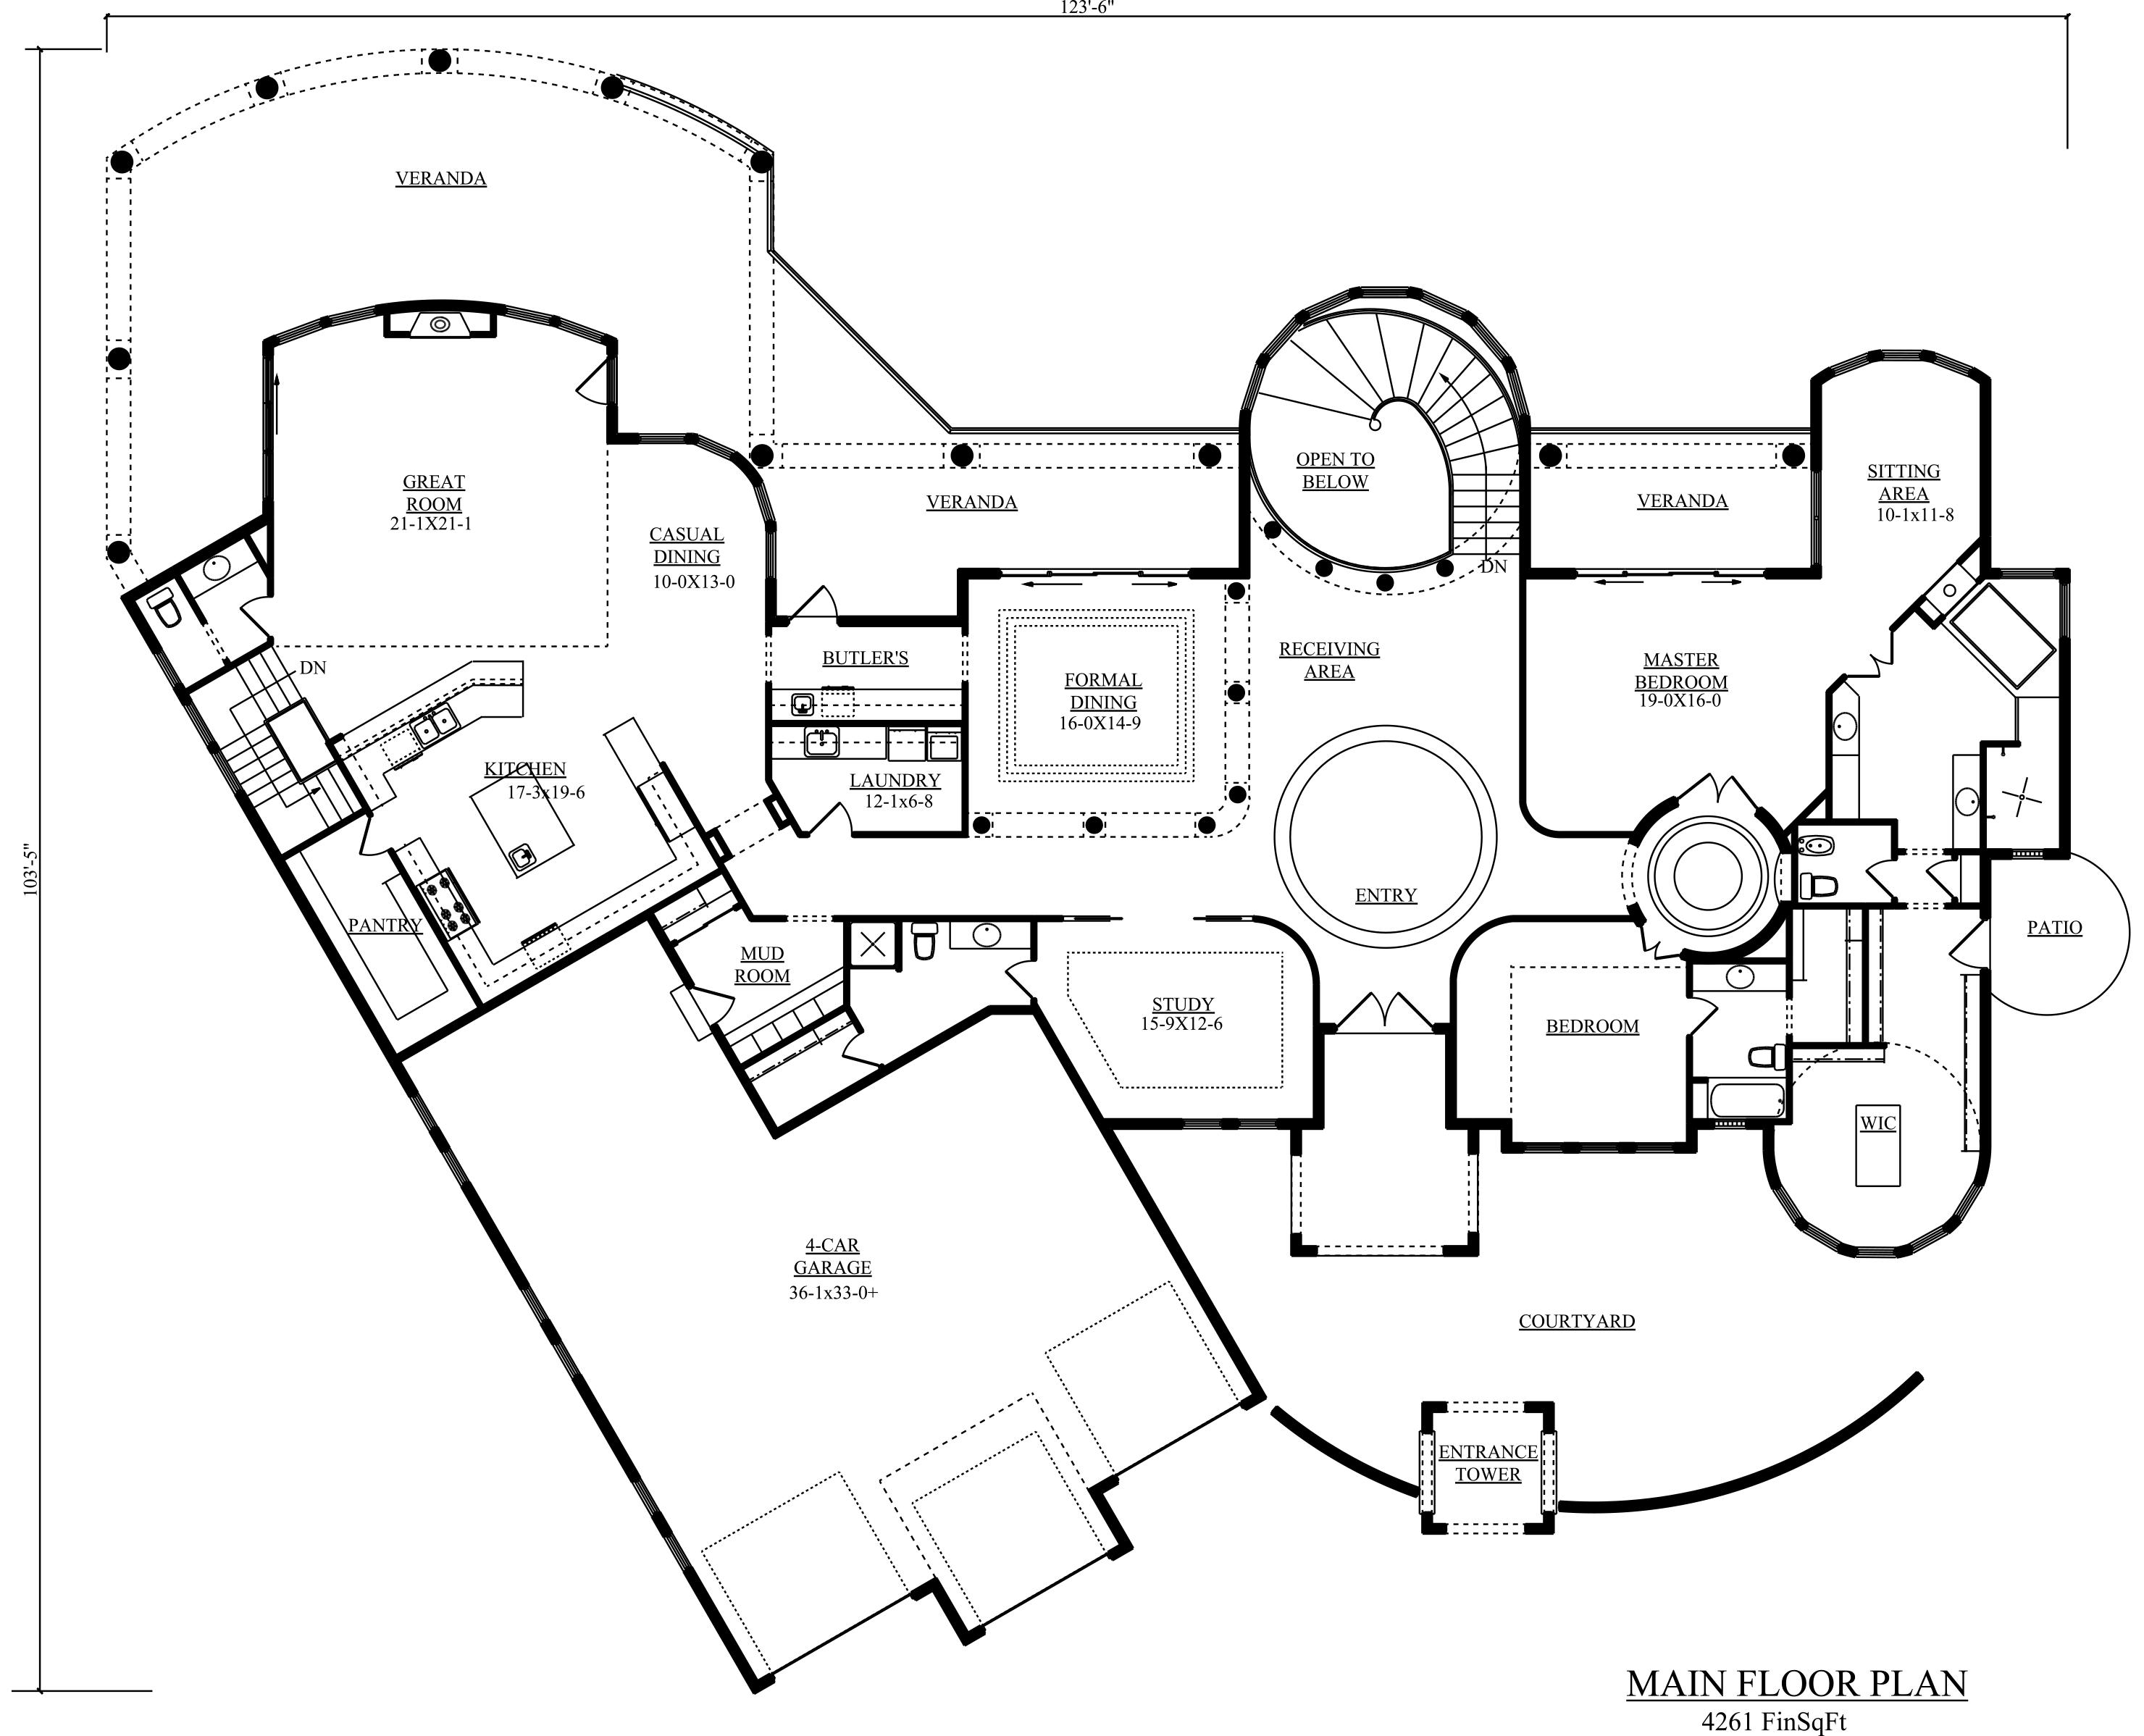 p1-the-venezia-main-floor-r-c